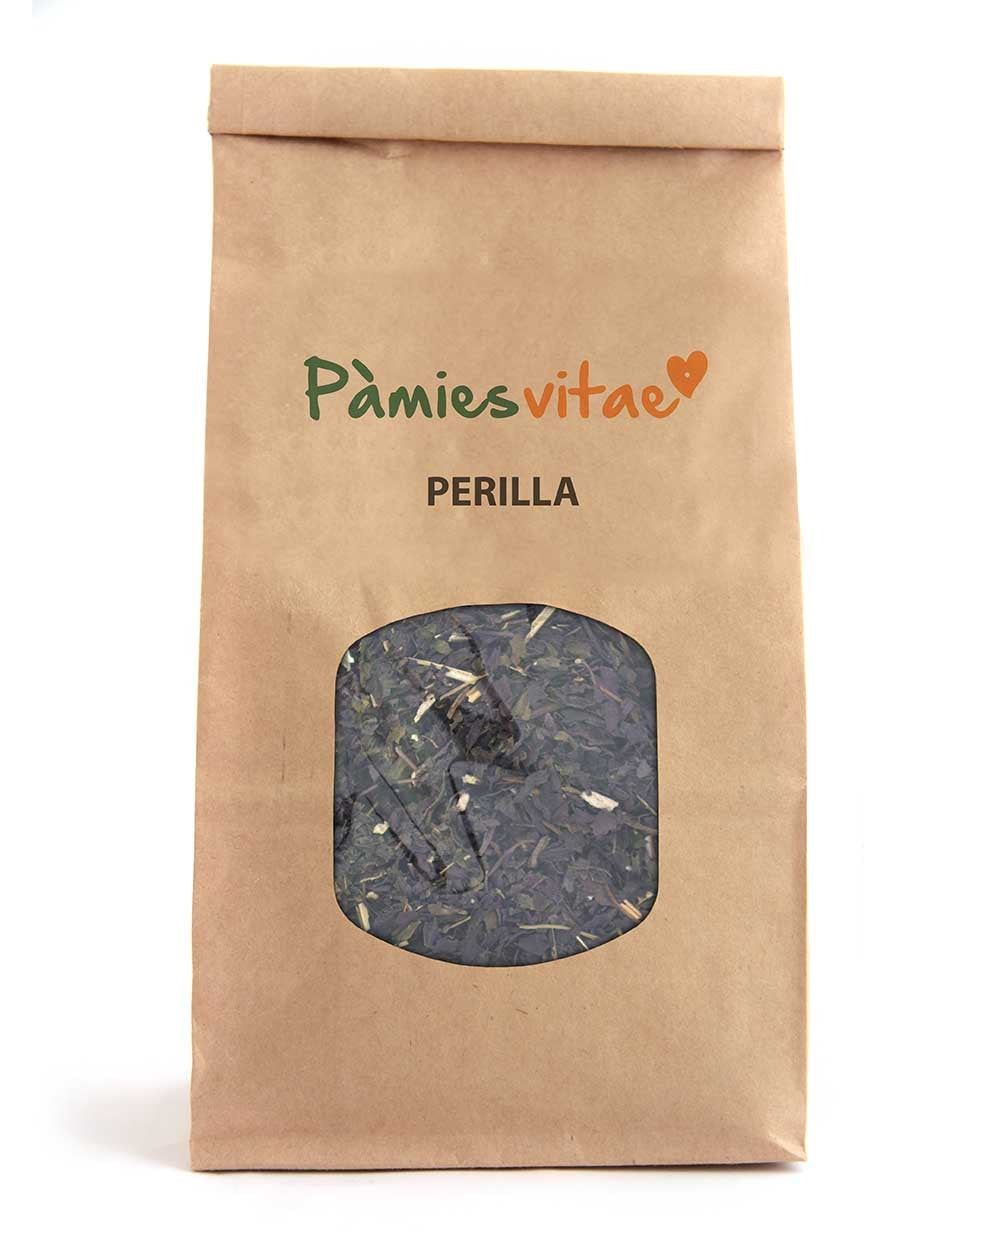 PERILLA MORADA - Perilla frutescens